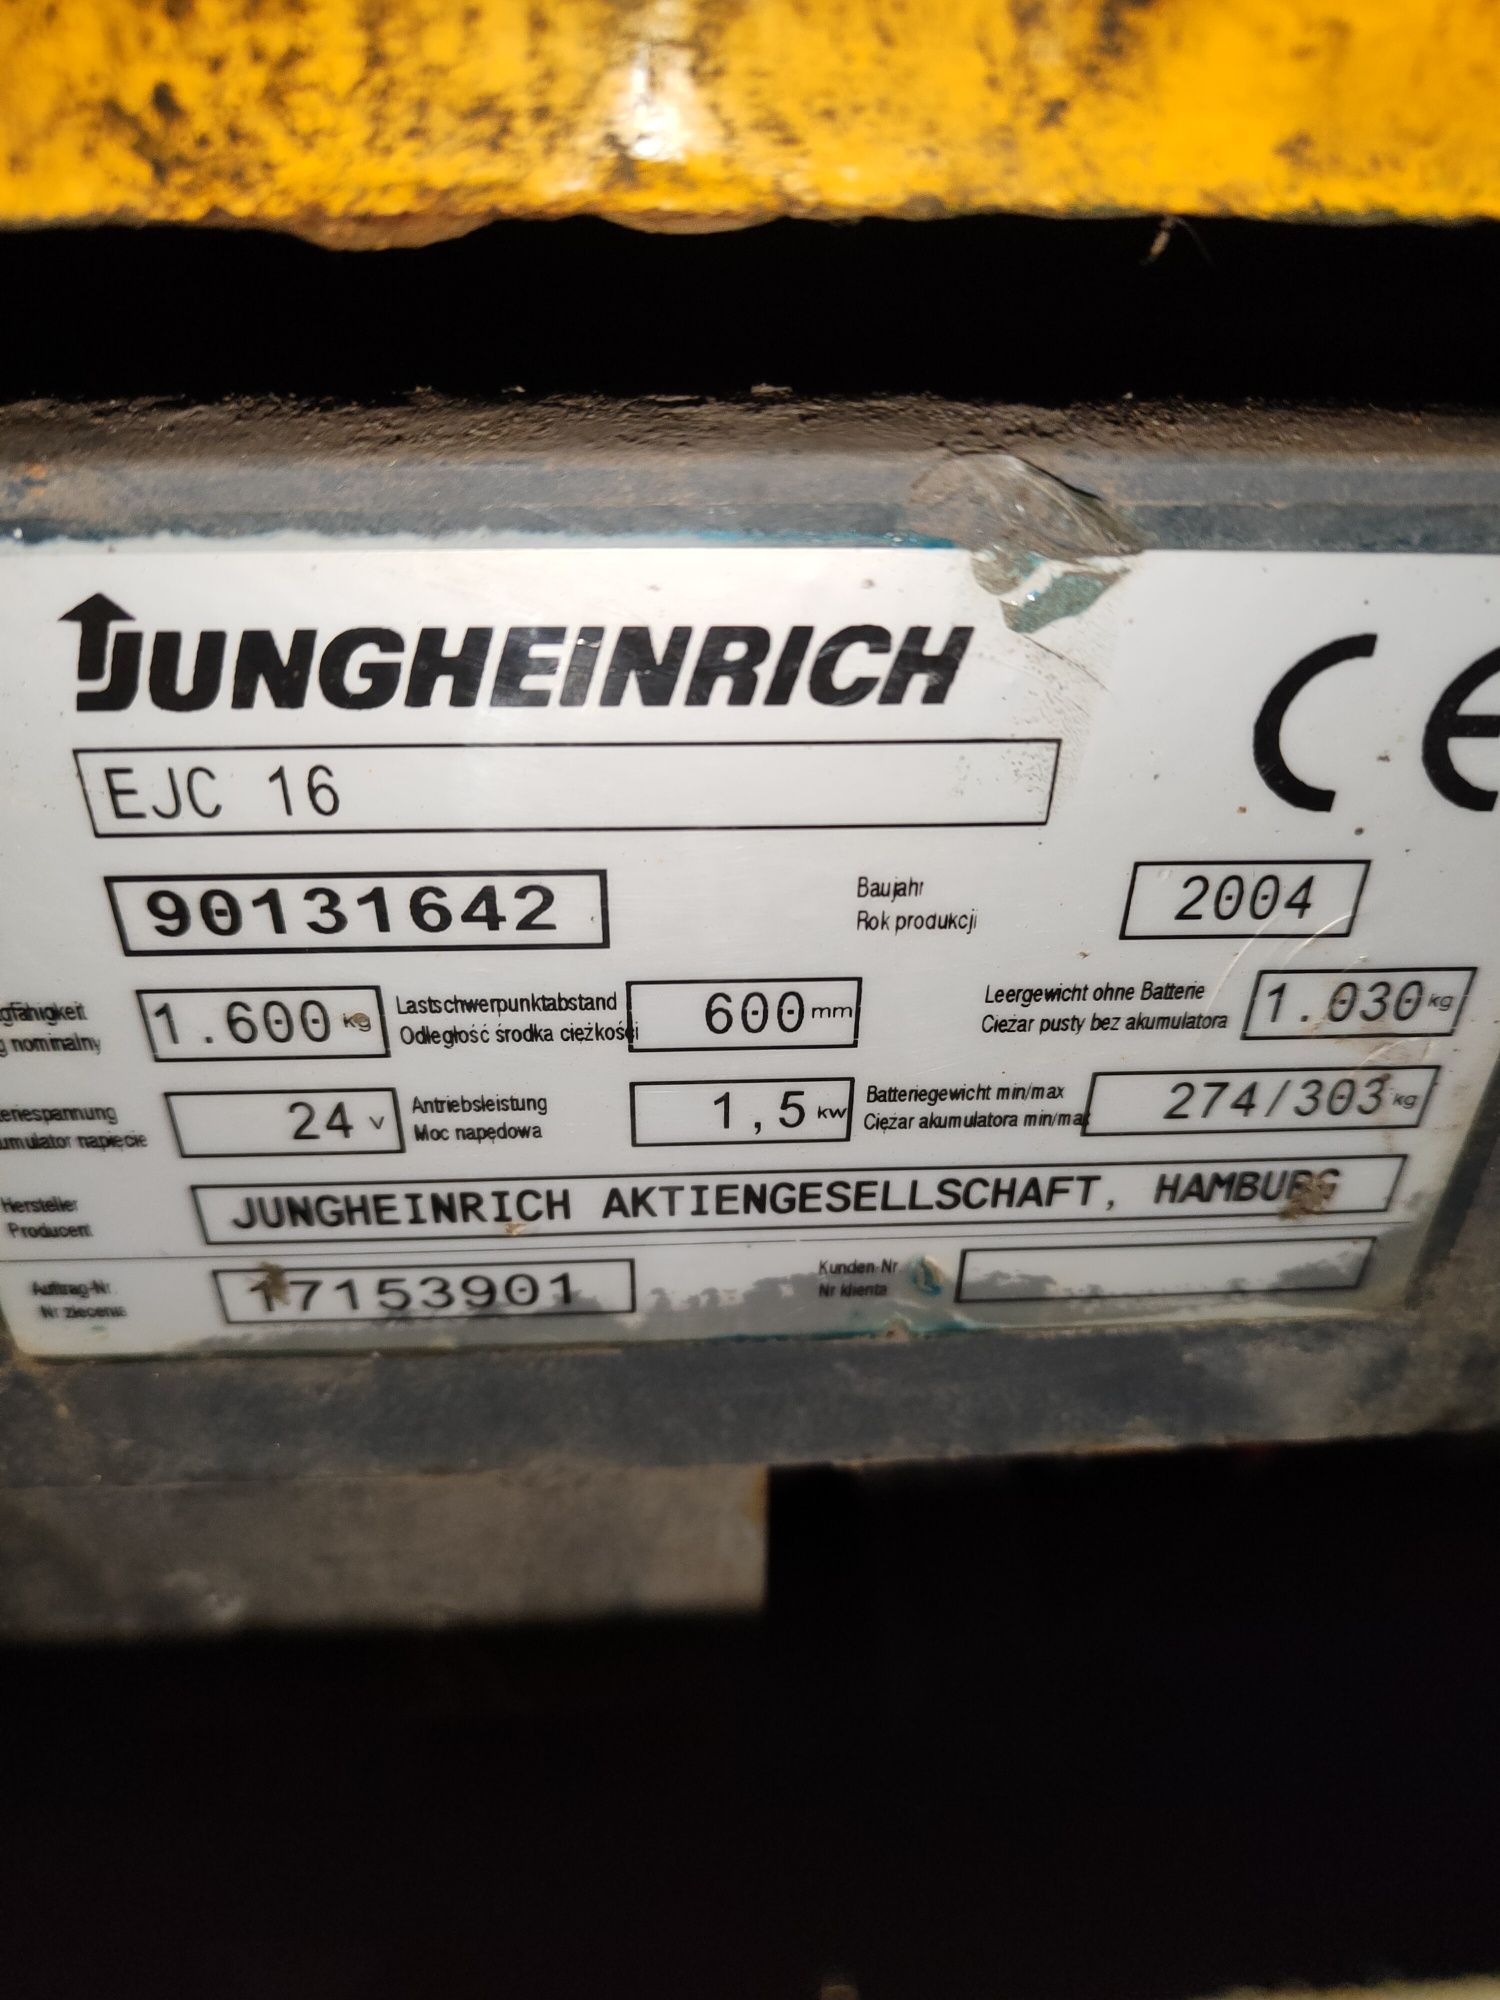 Wózek widłowy elektryczny Jungheinrich Ejc 16h Linde toyota.